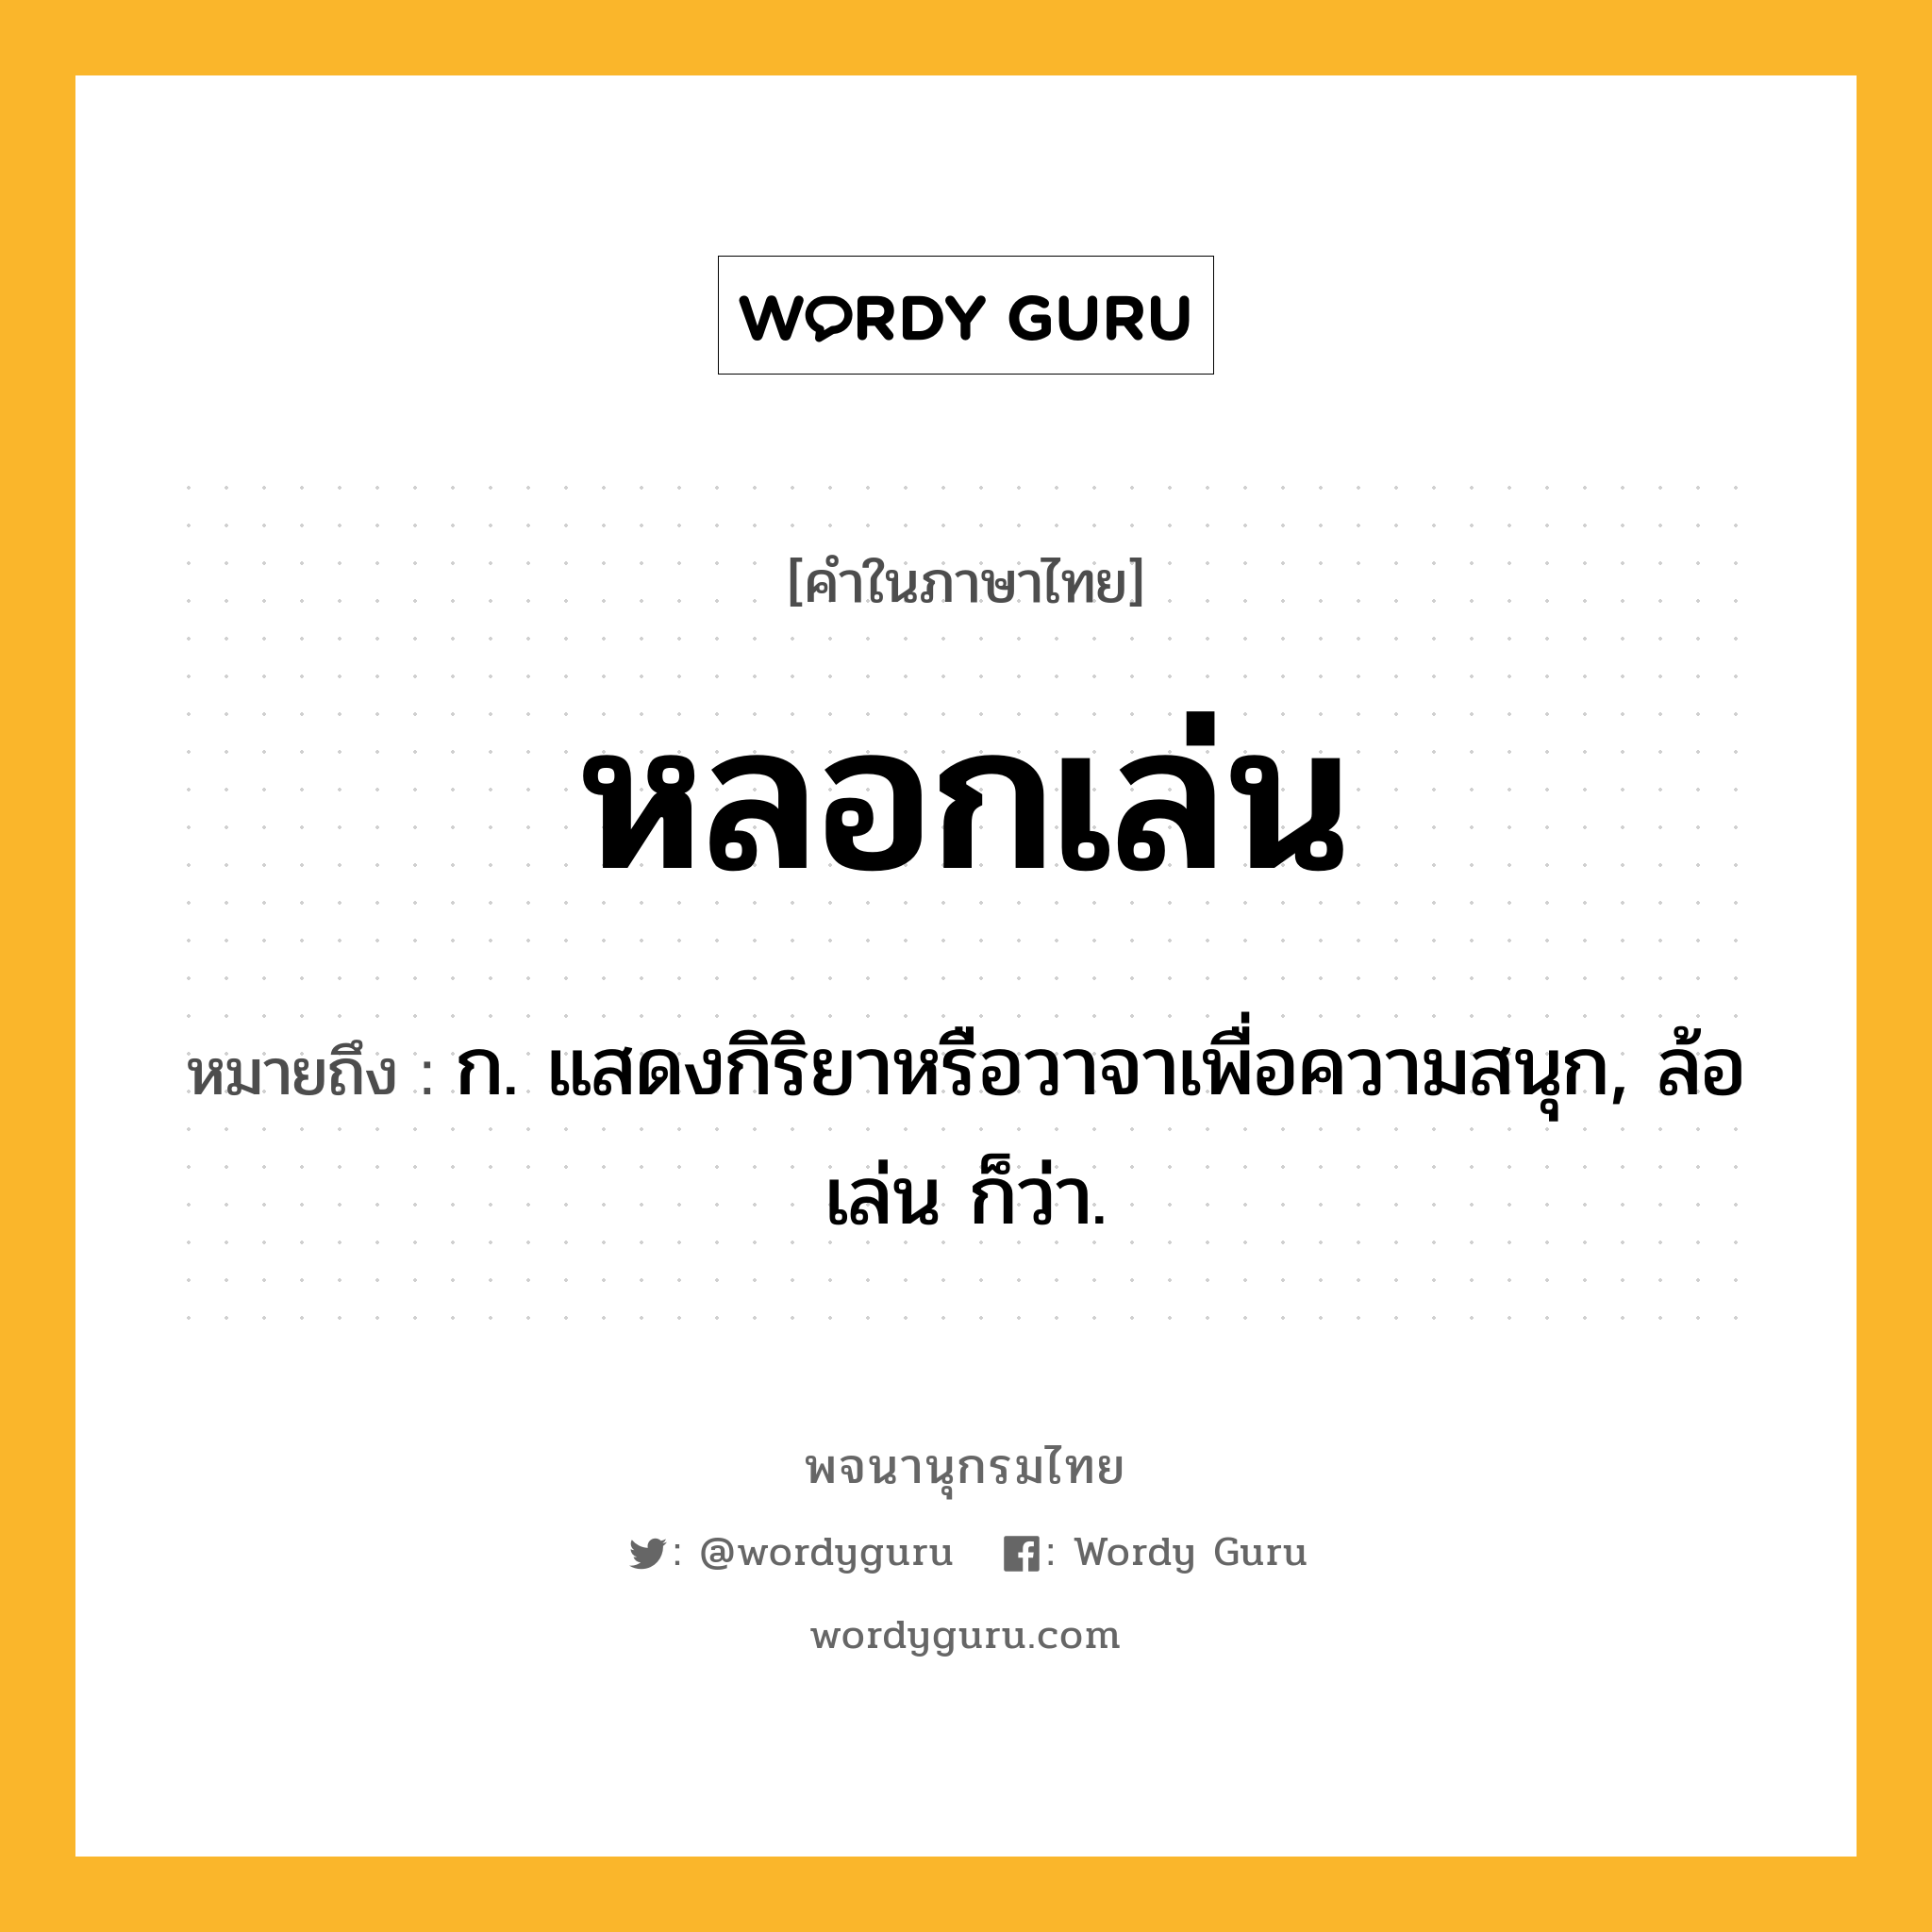 หลอกเล่น หมายถึงอะไร?, คำในภาษาไทย หลอกเล่น หมายถึง ก. แสดงกิริยาหรือวาจาเพื่อความสนุก, ล้อเล่น ก็ว่า.